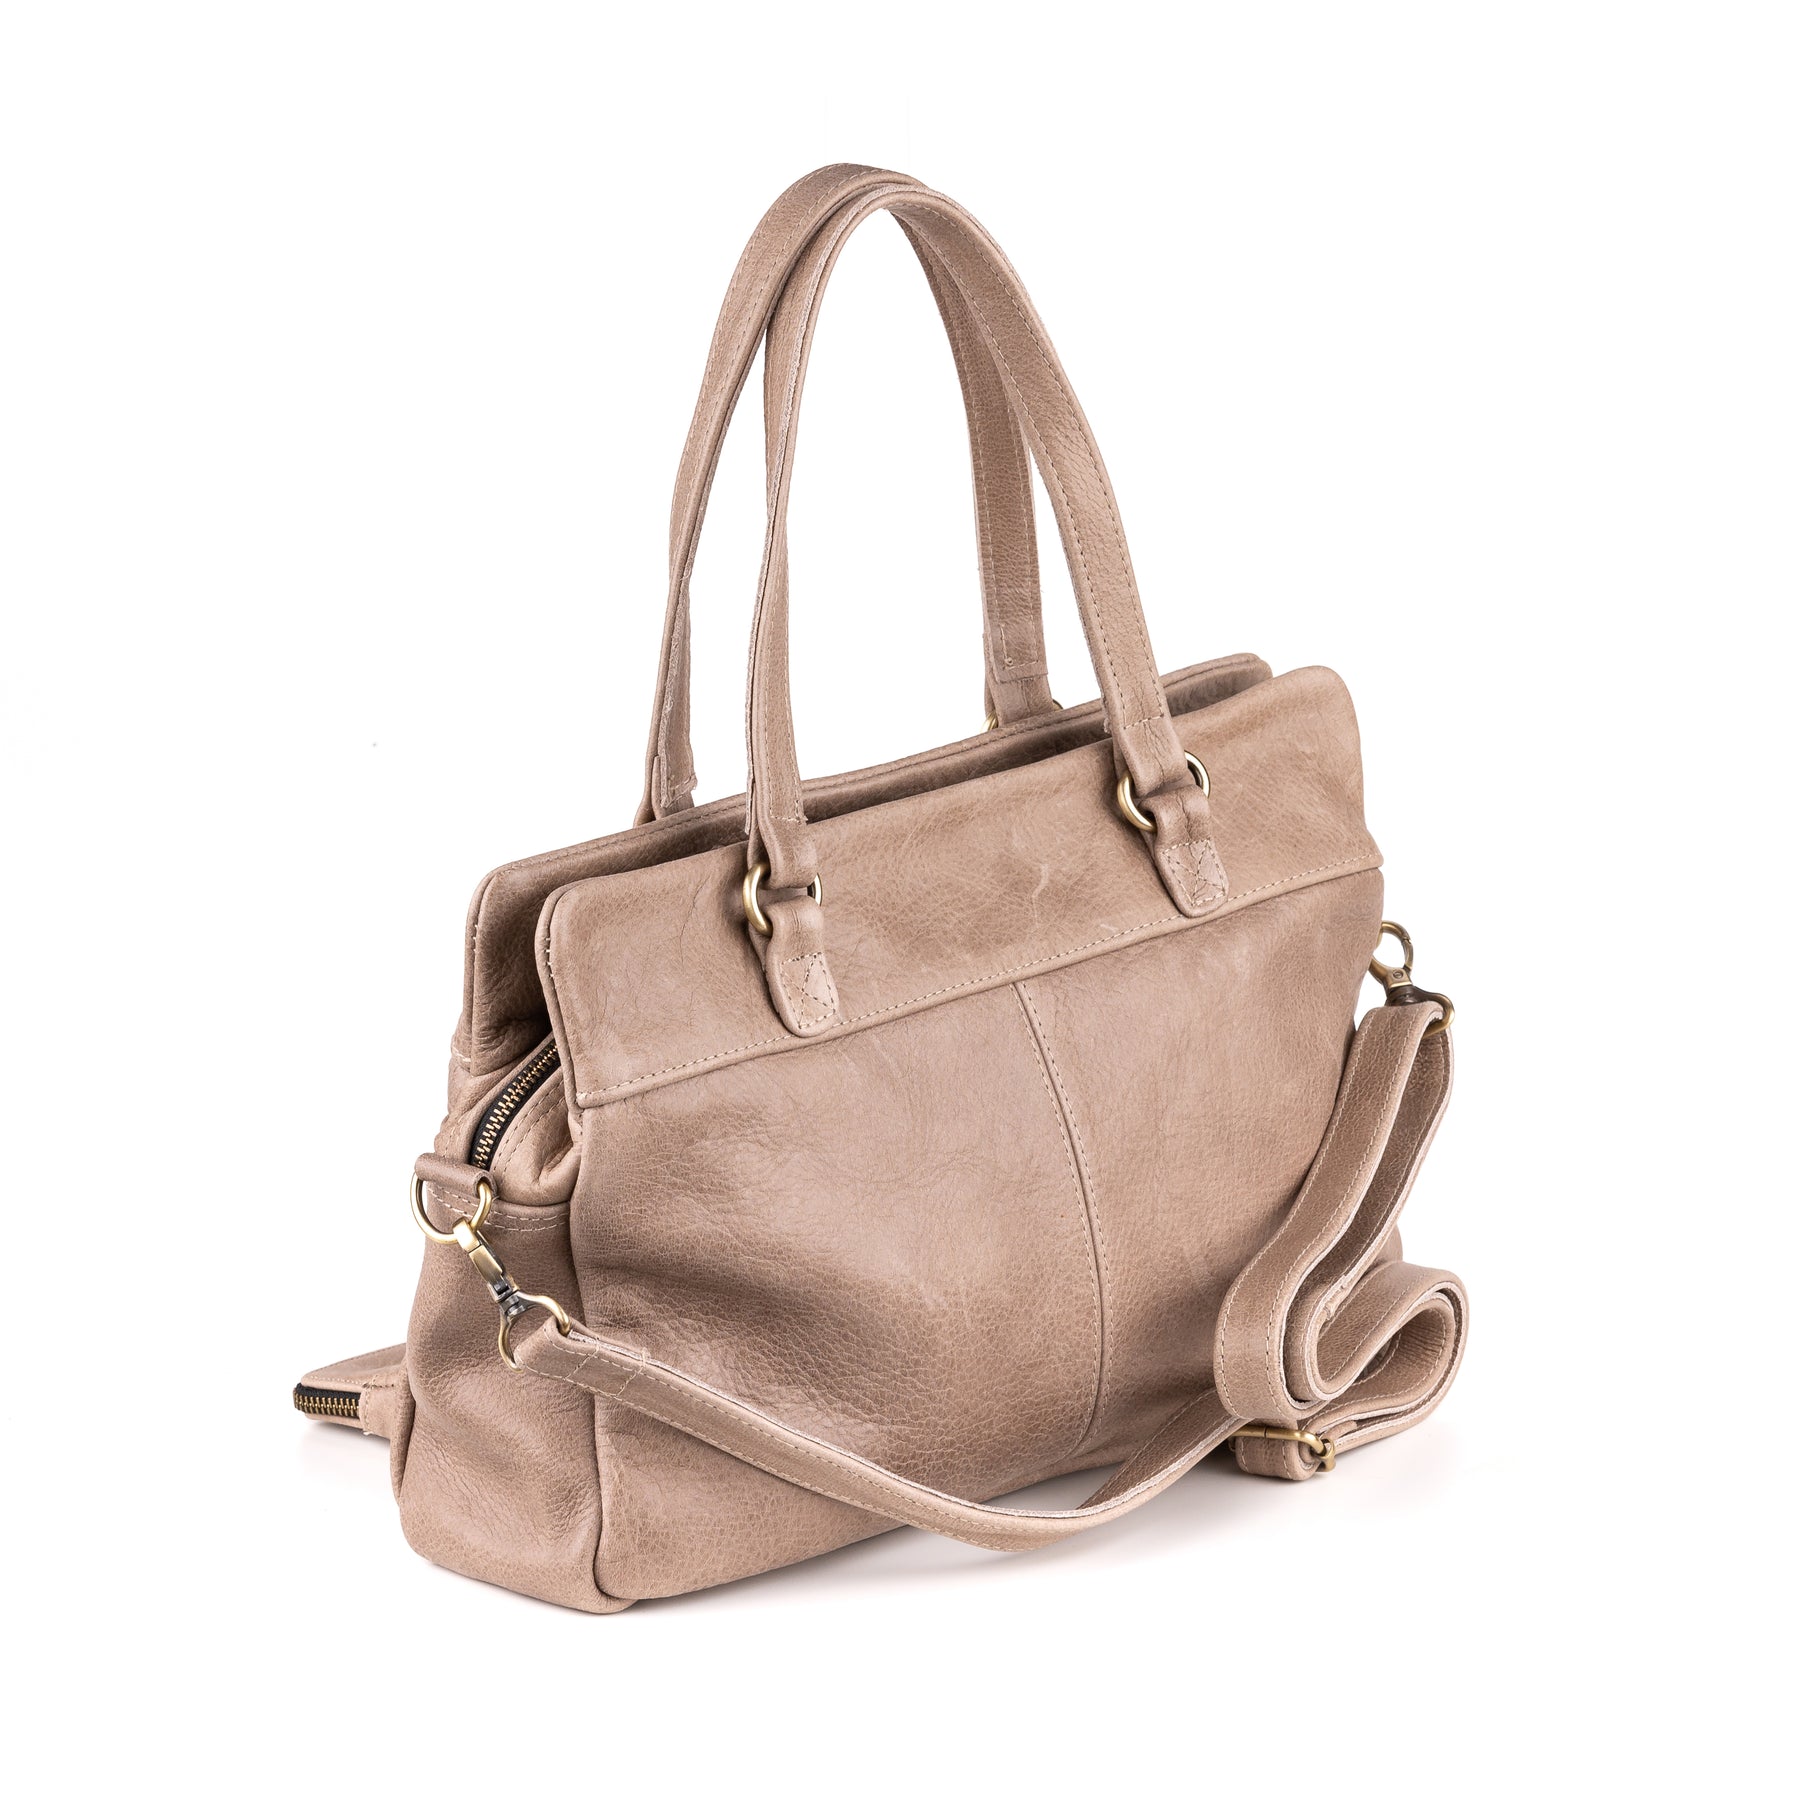 Arnhem Ladies Handbag Leather Taupe - Vintage leather